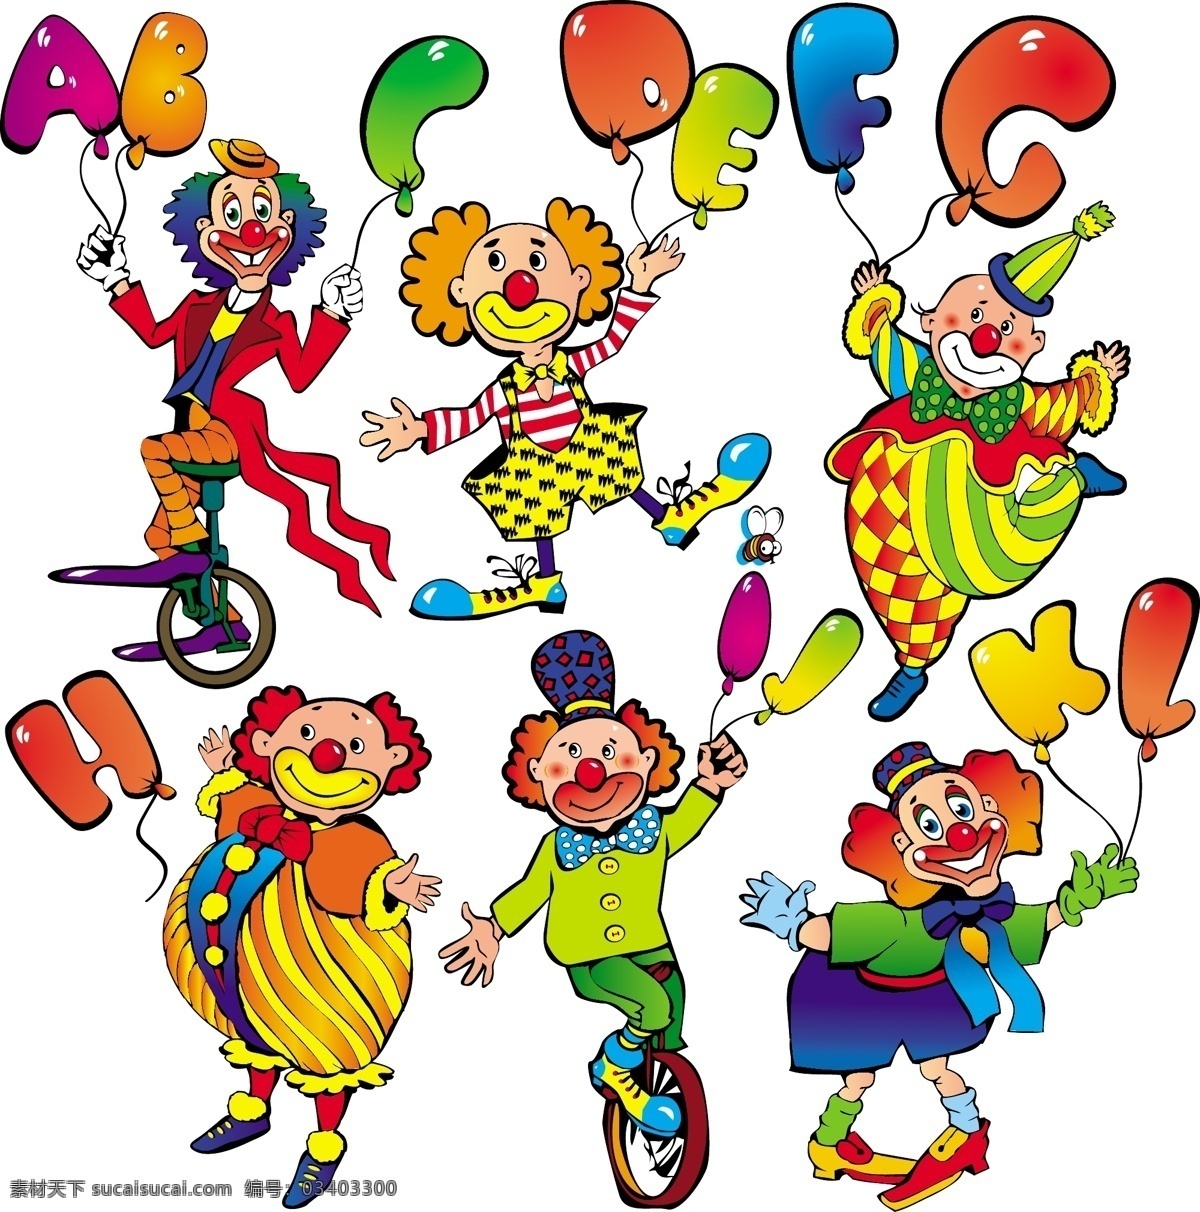 卡通小丑 马戏团 小丑表演 卡通设计 小丑 设计素材 卡通人物 音乐小丑 动漫人物 白色